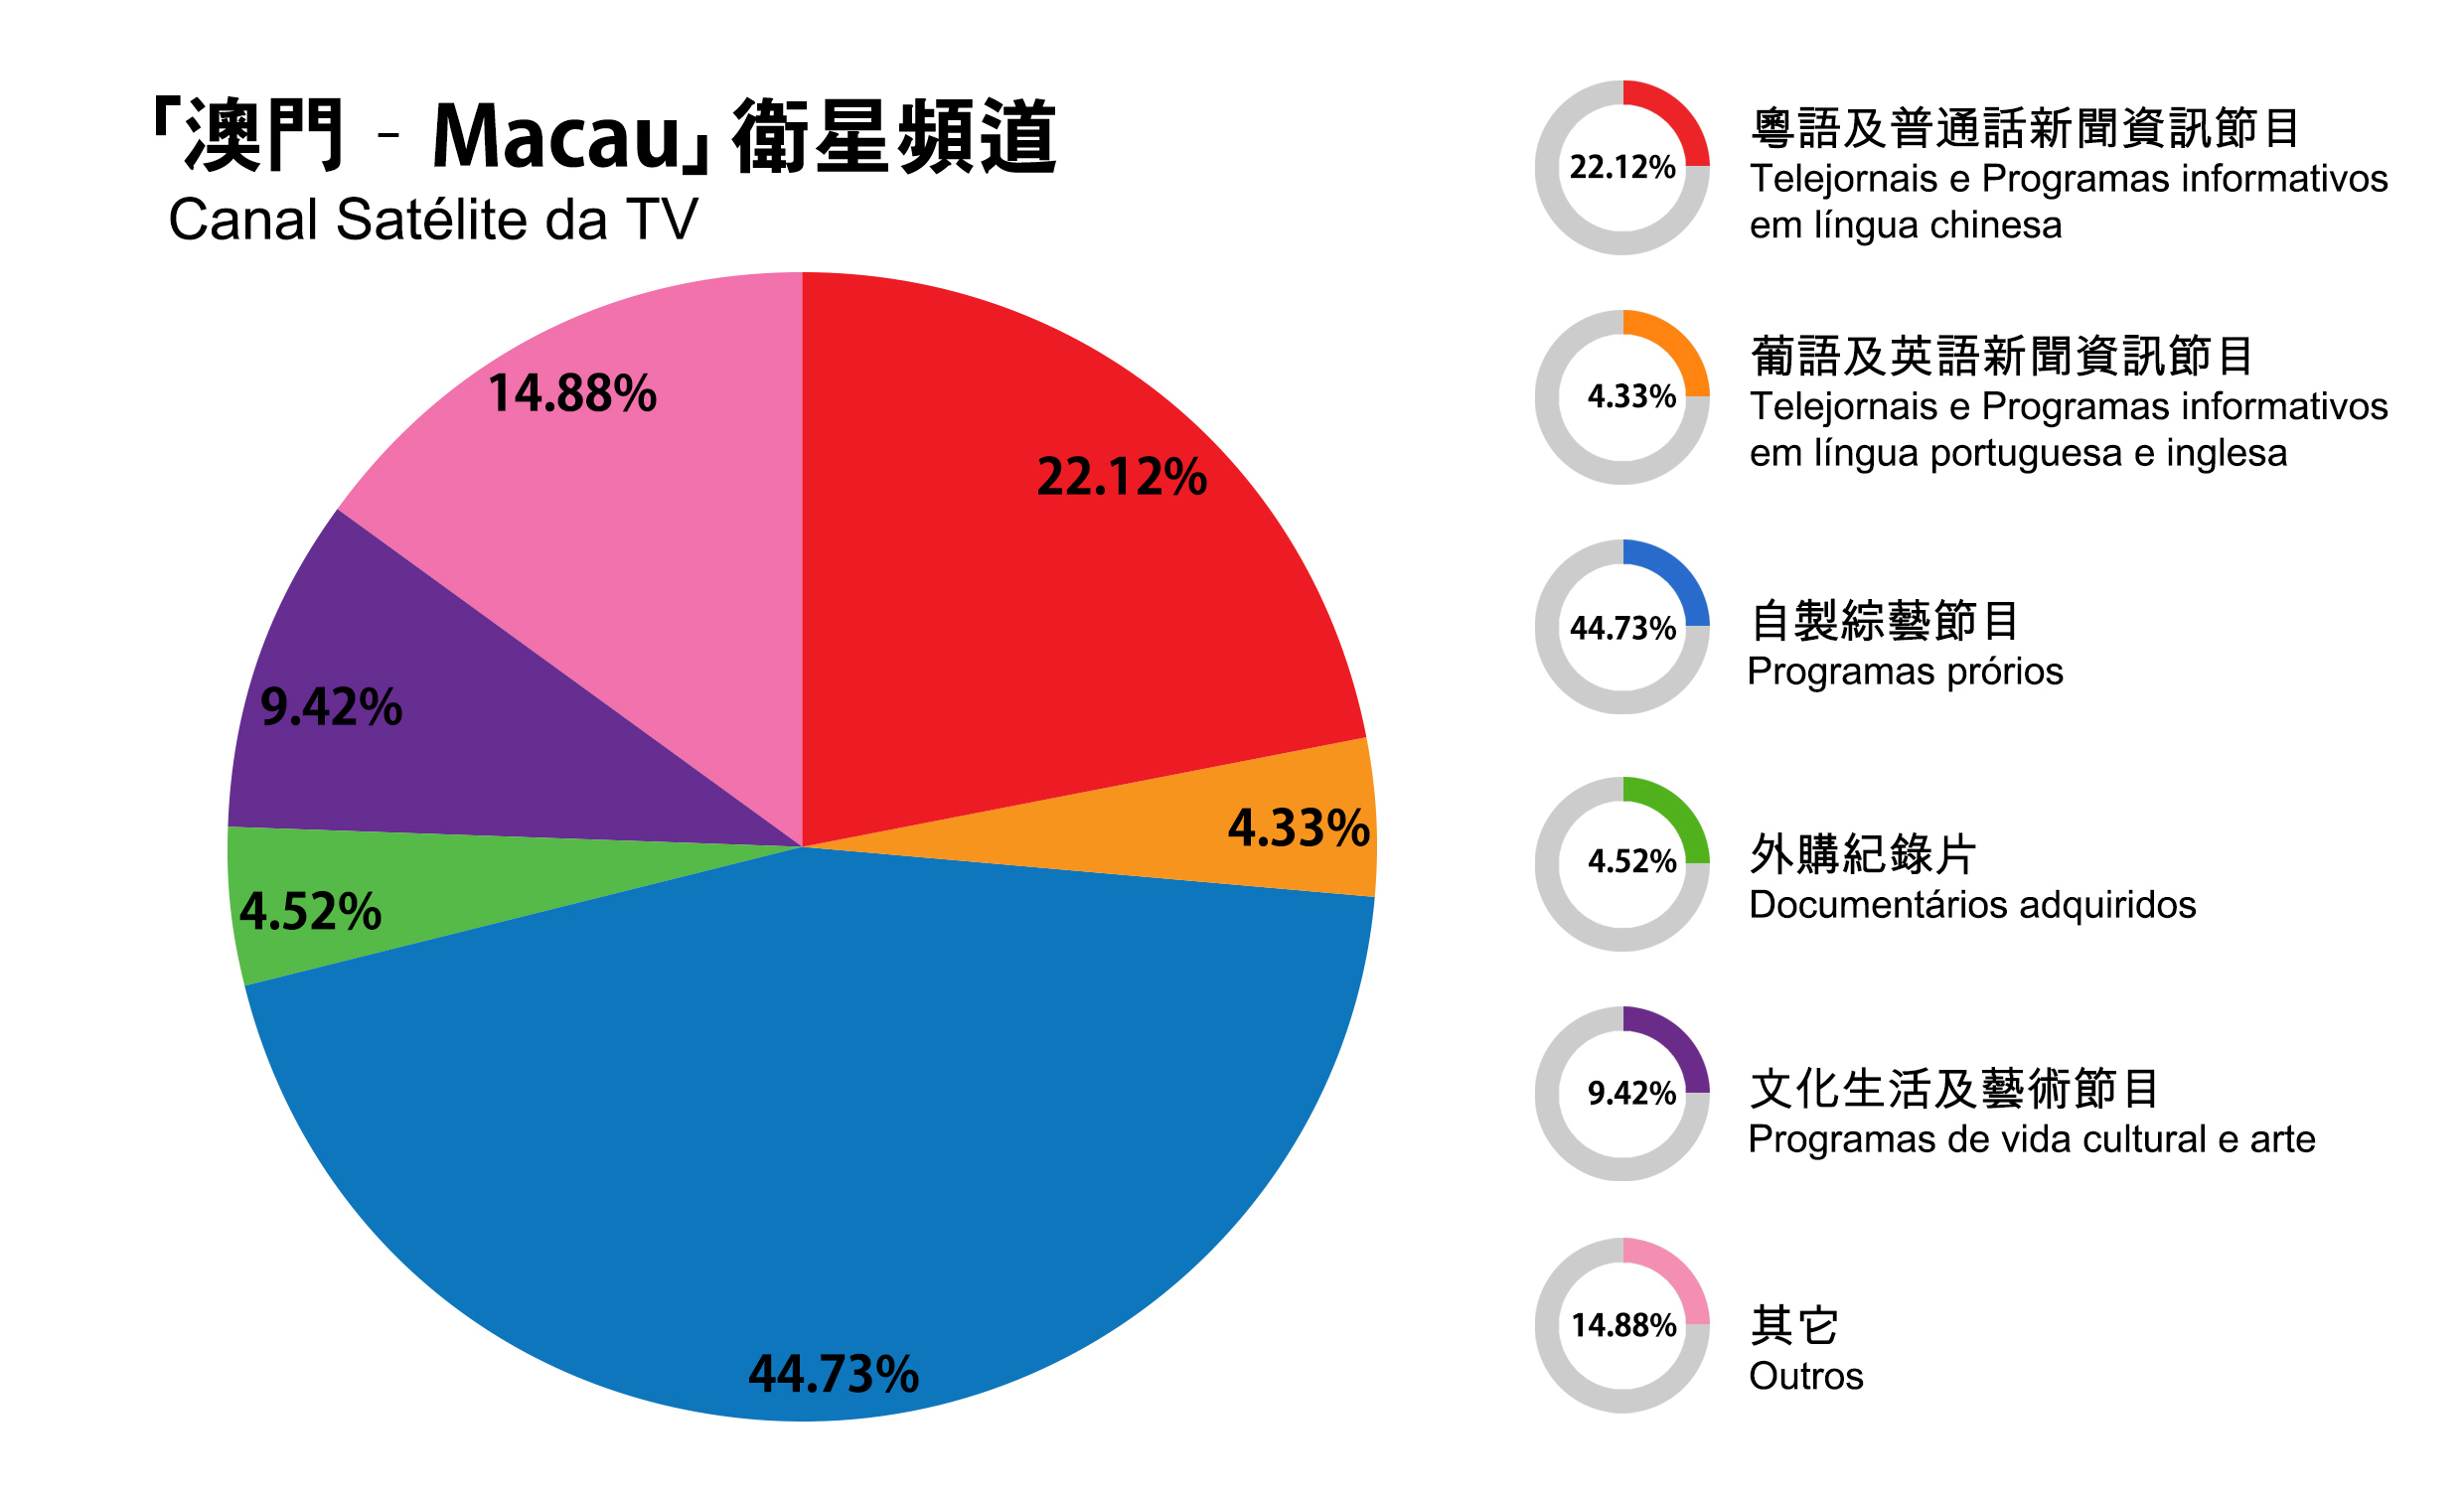 9 節 目 統 計 Indicadores de Programação 澳 門 Macau 衛 星 電 視 頻 道 每 日 24 小 時 廣 播,2015 年 度 播 出 時 間 為 8,760 小 時, 分 類 如 下 : 1. 粵 語 / 普 通 話 新 聞 及 資 訊 節 目 22.12%, 即 1,938.01 小 時 2. 葡 語 / 英 語 新 聞 及 資 訊 節 目 4.